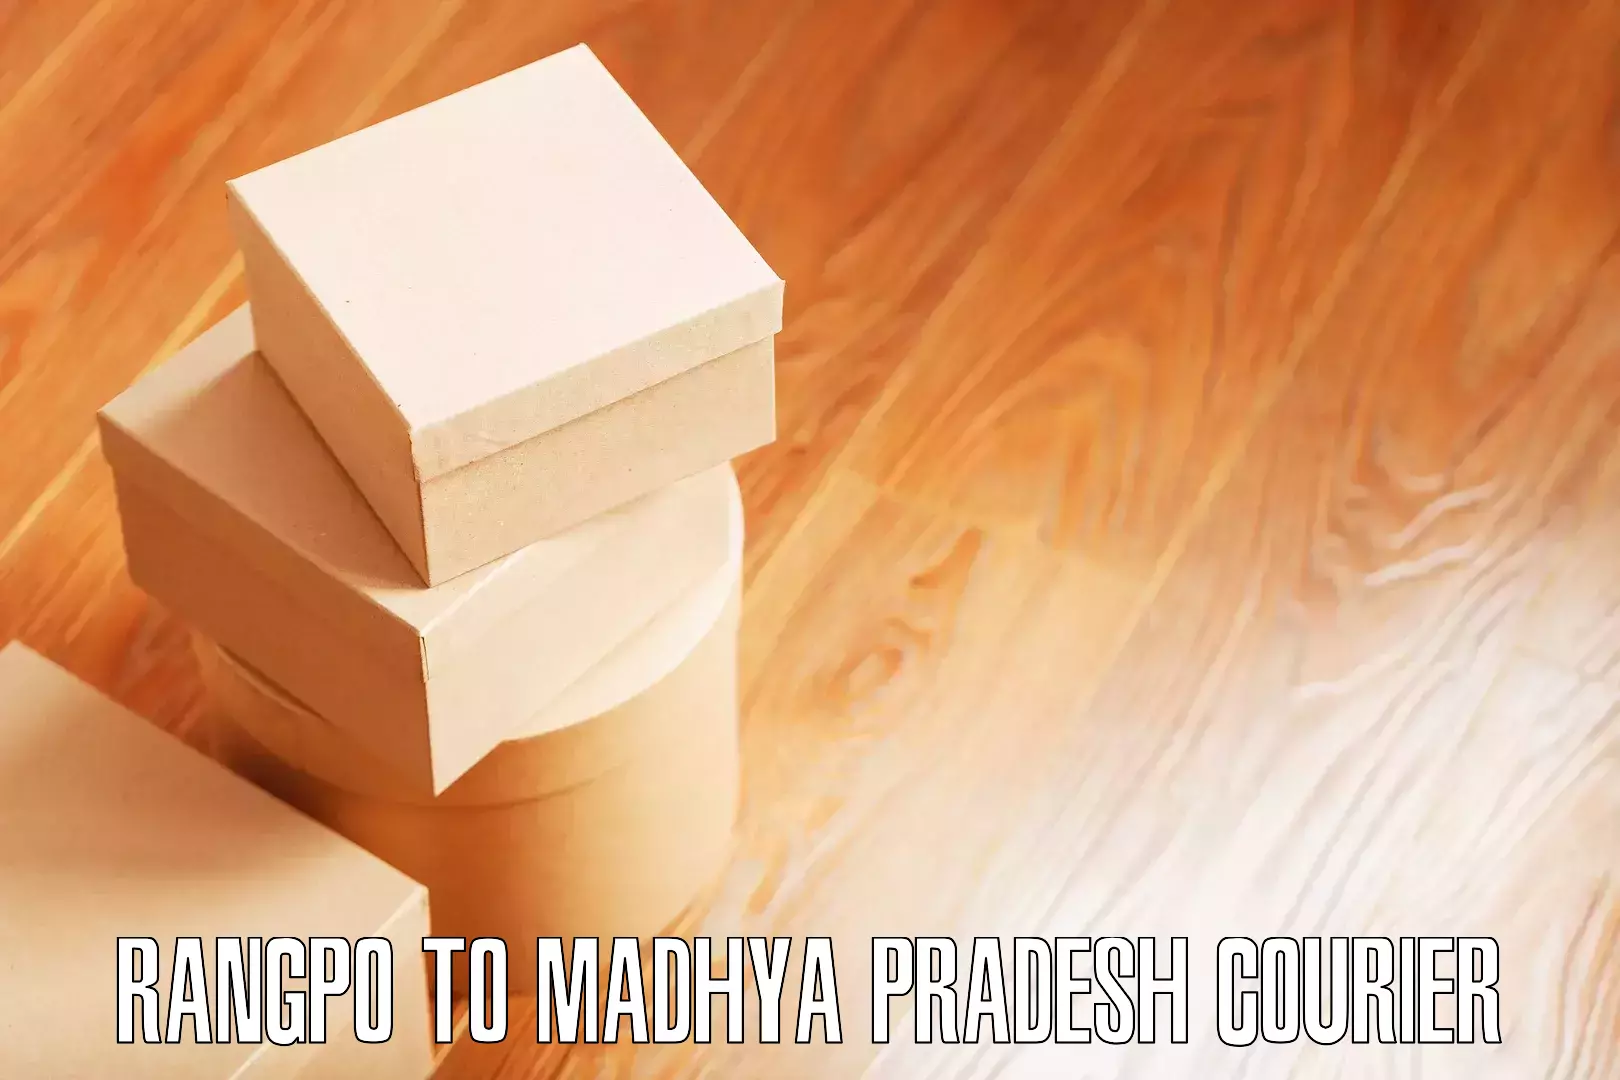 Specialized moving company Rangpo to Madhya Pradesh